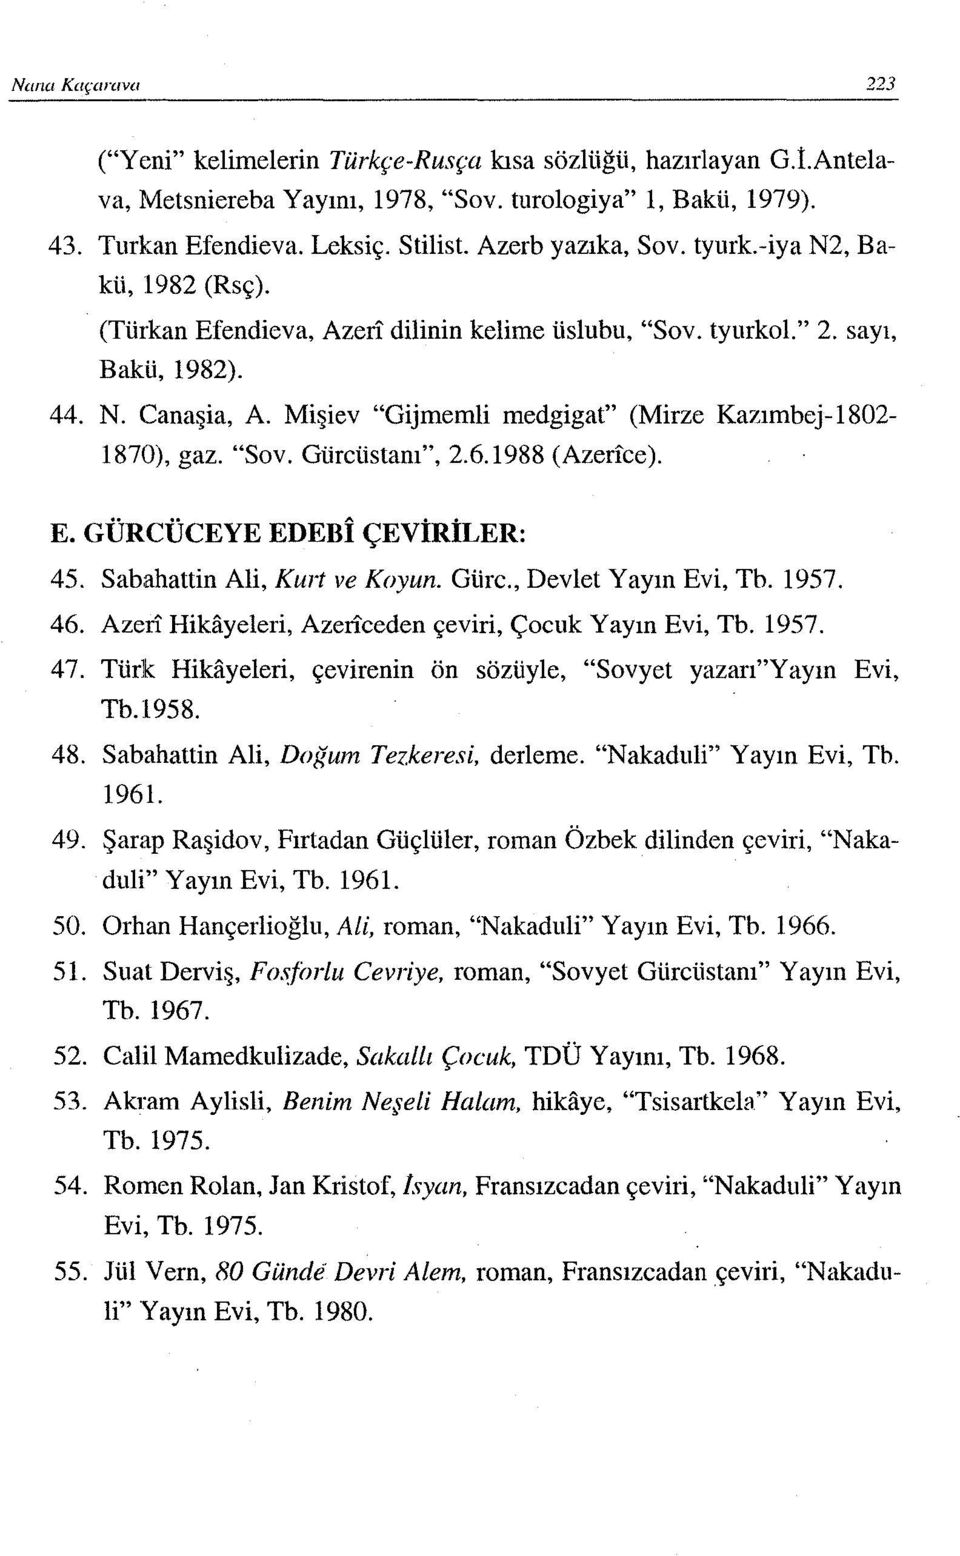 Mişiev "Gijmemli medgigat" (Mirze Kazımbej-1802-1870), gaz. "Sov. Güreüstanı", 2.6.1988 (Azerıce). E. GÜRCÜCEYE EDEBI çeviriler: 45. Sabahattin Ali, Kurt ve Koyun. Güre., Devlet Yayın Evi, Tb. 1957.